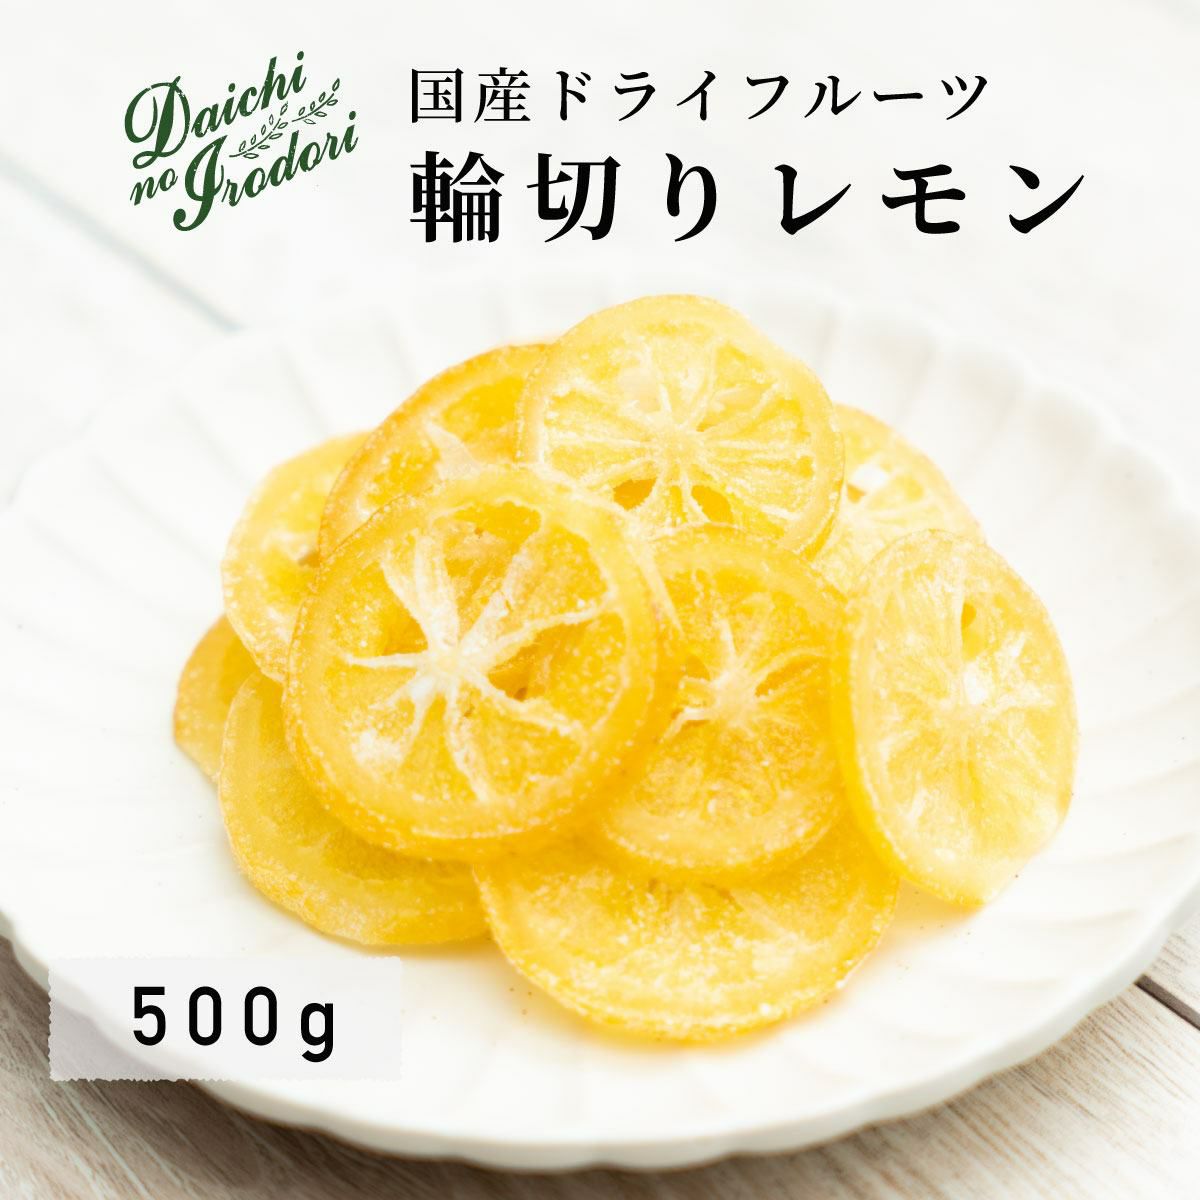 ドライフルーツ 国産 輪切り レモン 500g TOP